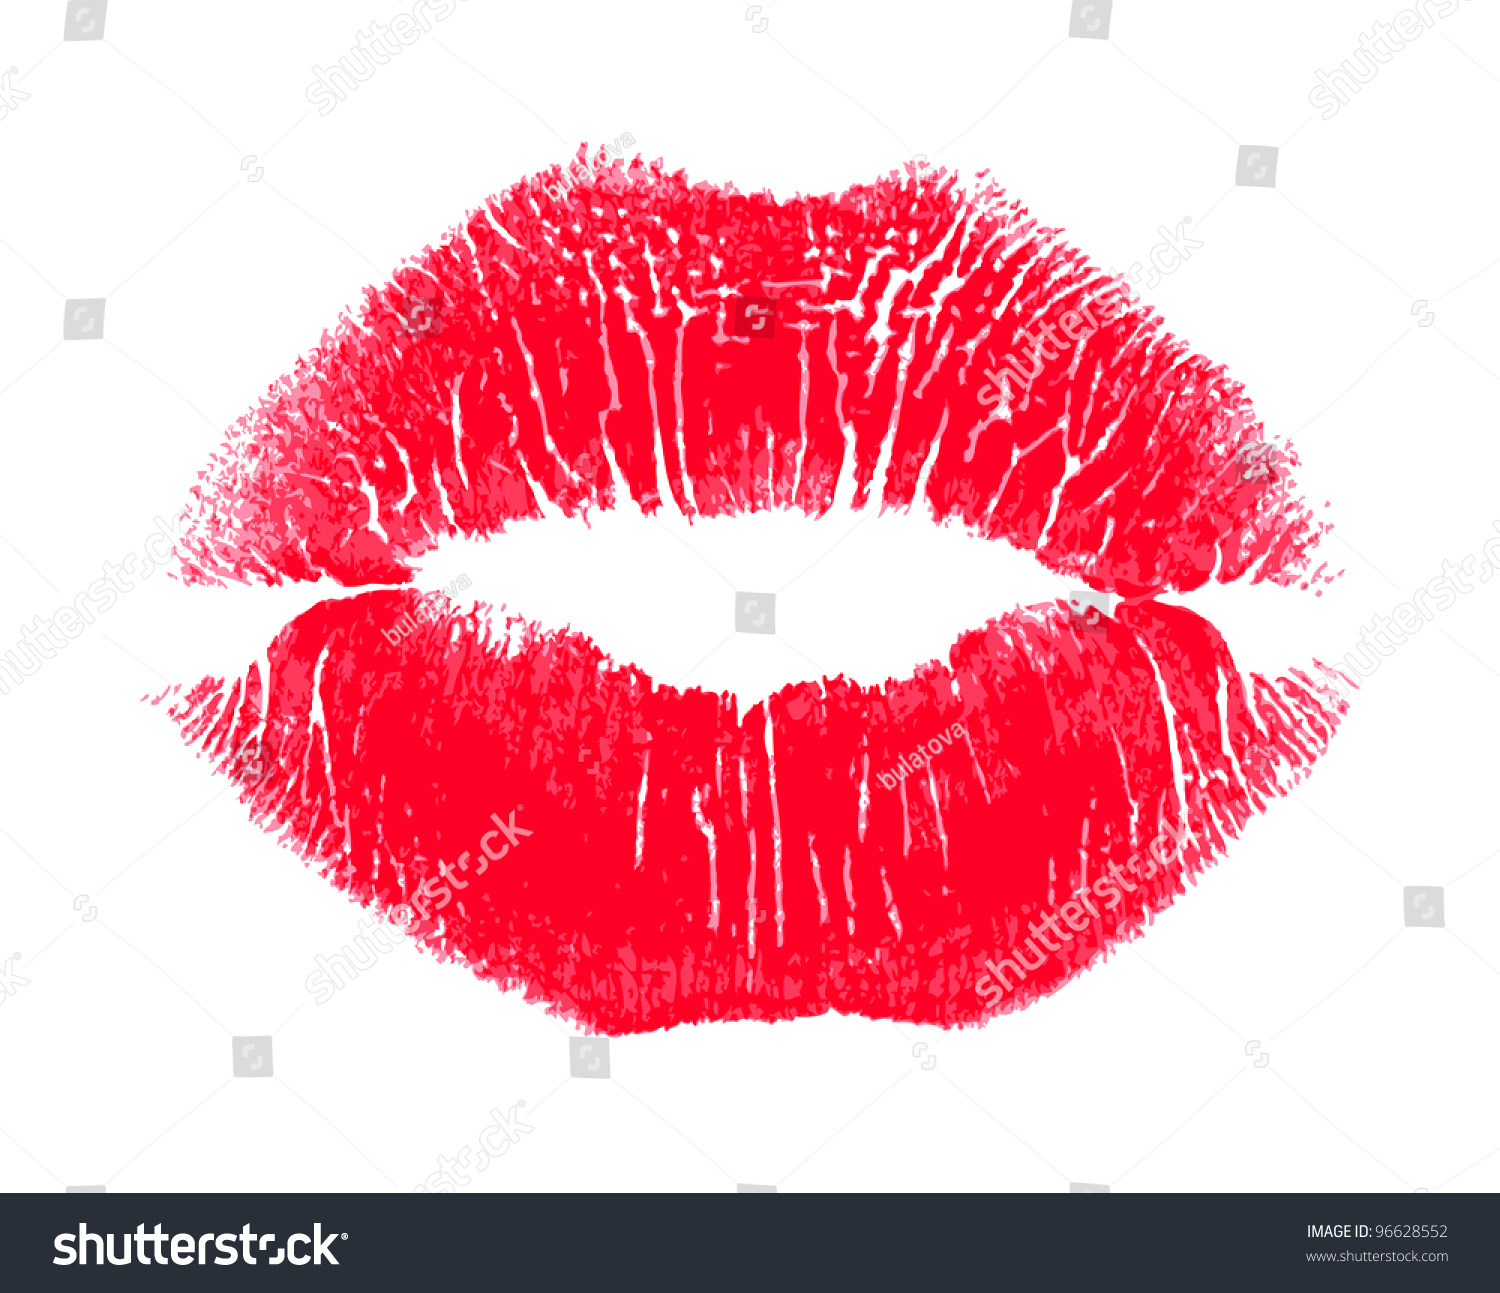 clipart lipstick kiss - photo #47